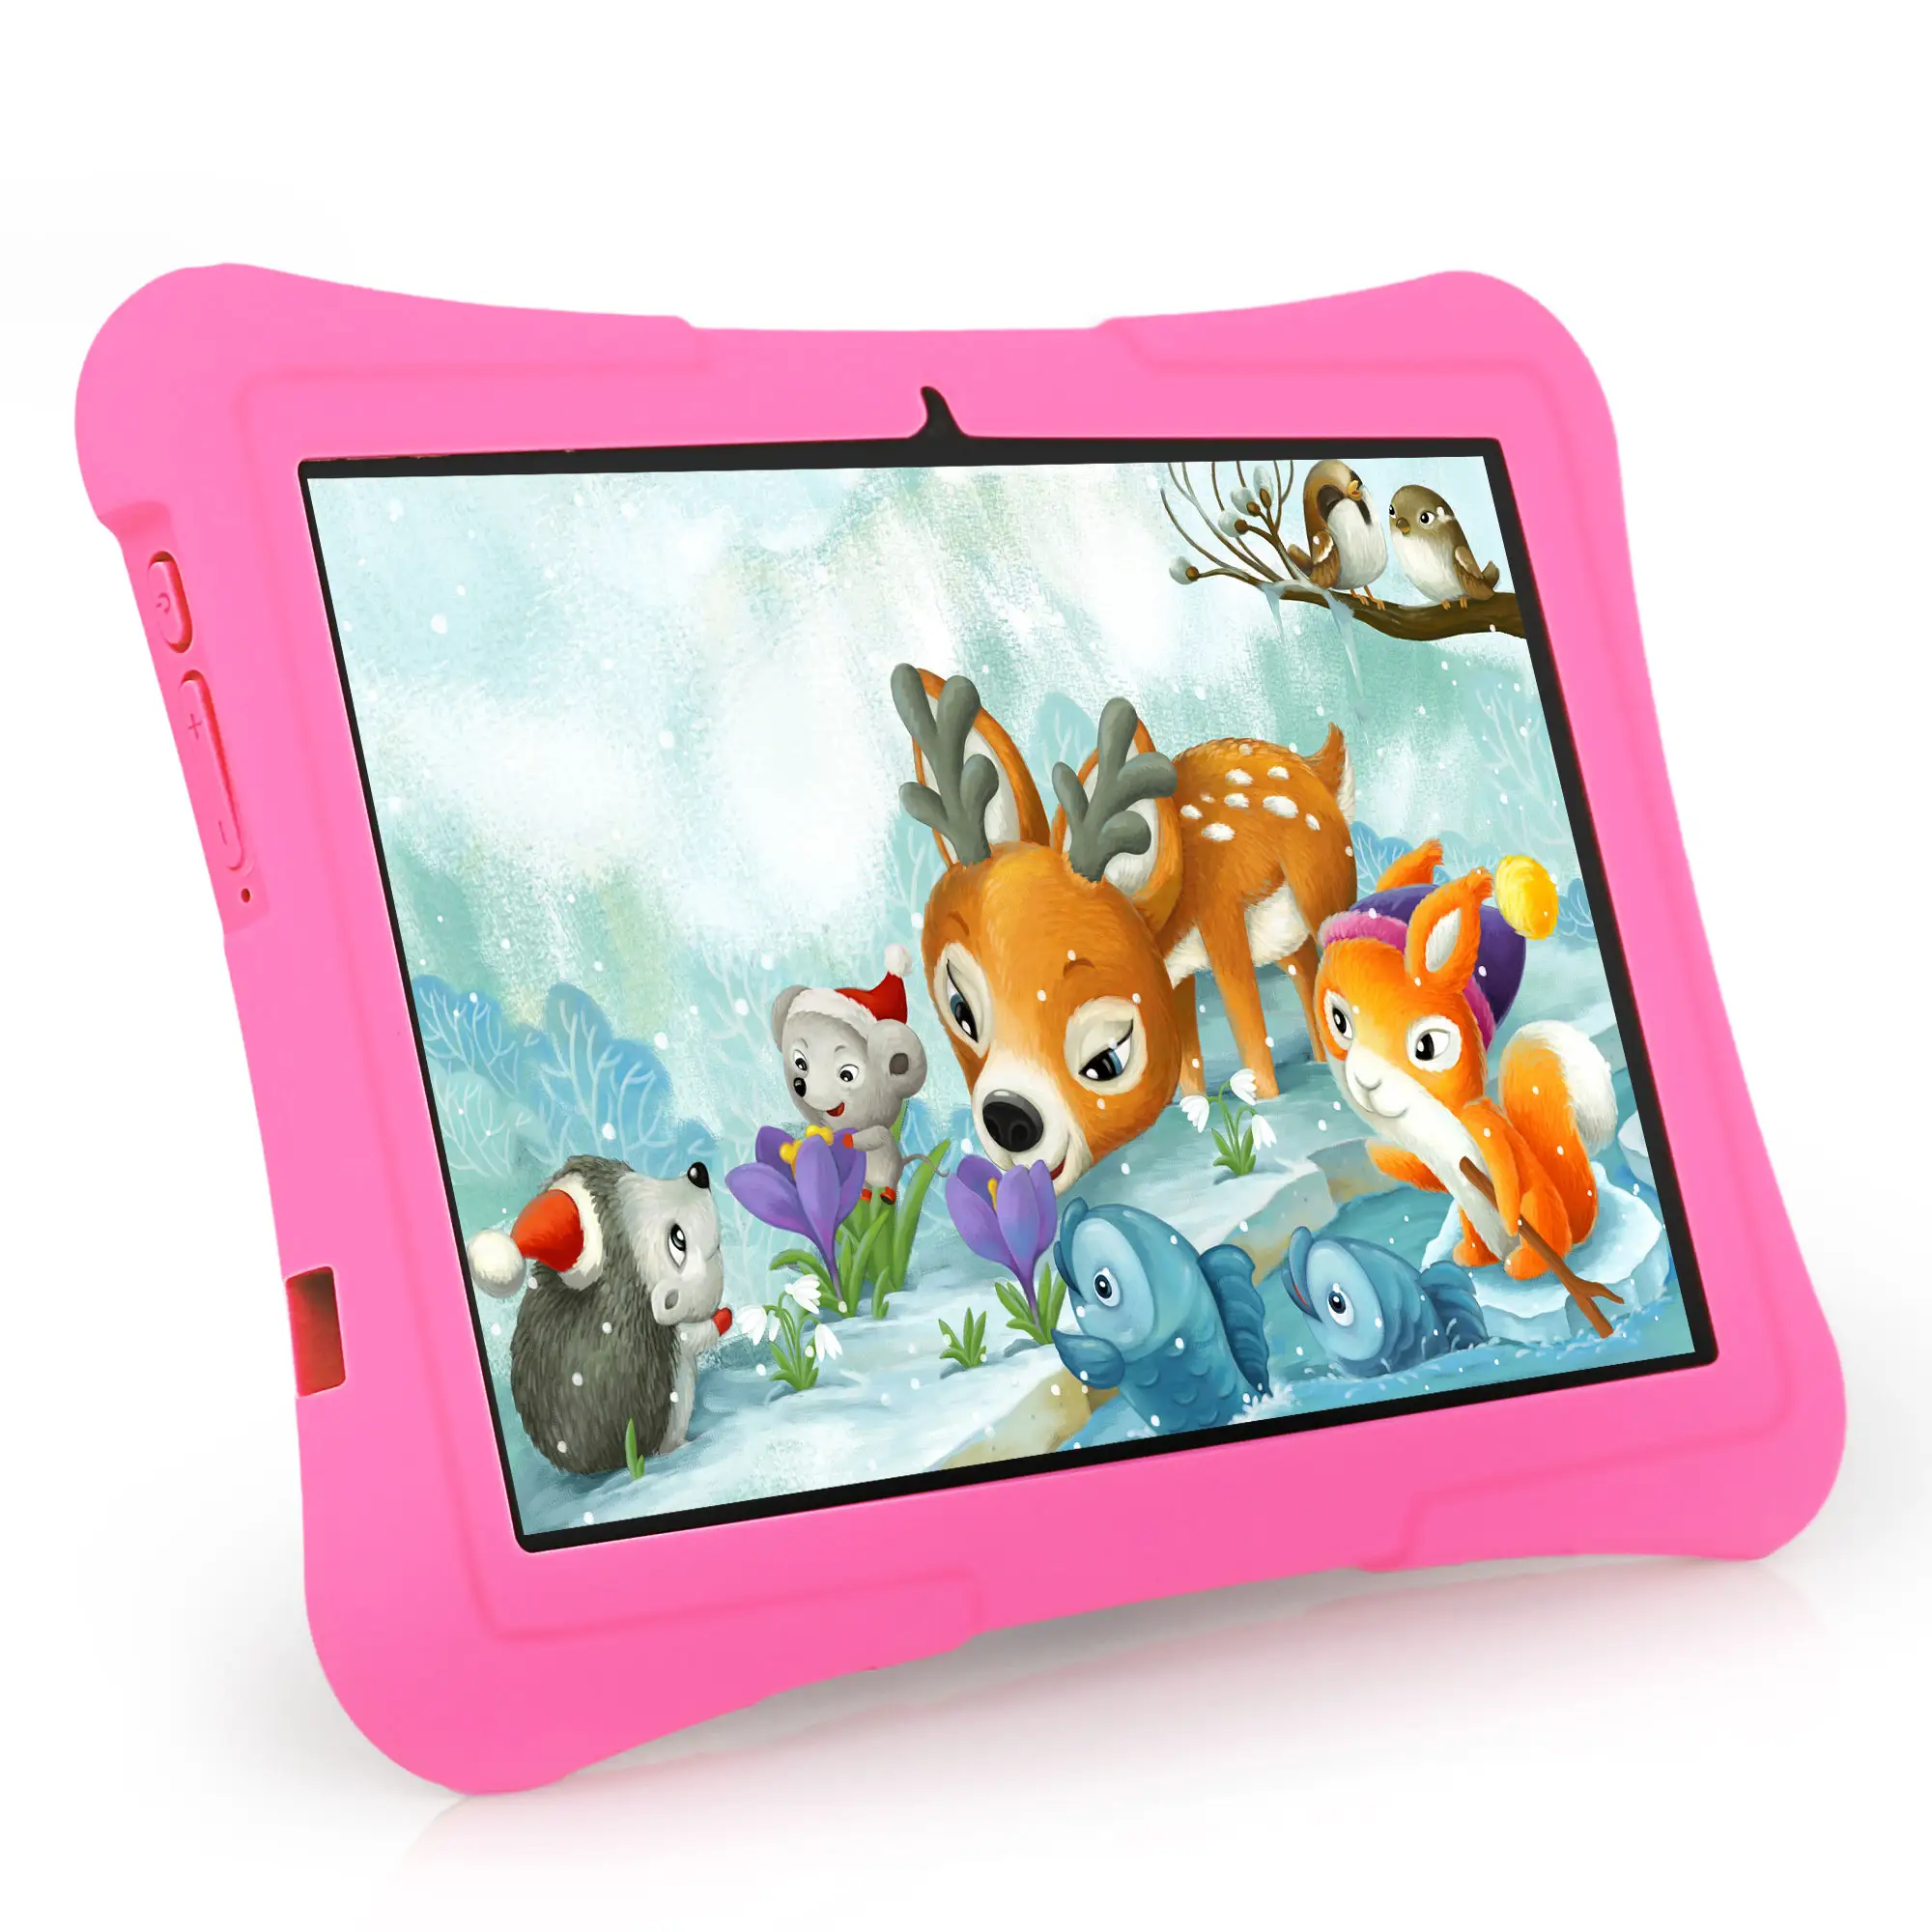 Veidoo 10 inç Octa çekirdekli WiFi 6 Android 13 Tablet çocuklar için 8GB genişletmek Ram 128GB ROM ebeveyn kontrolü APP ile çocuk tableti PC